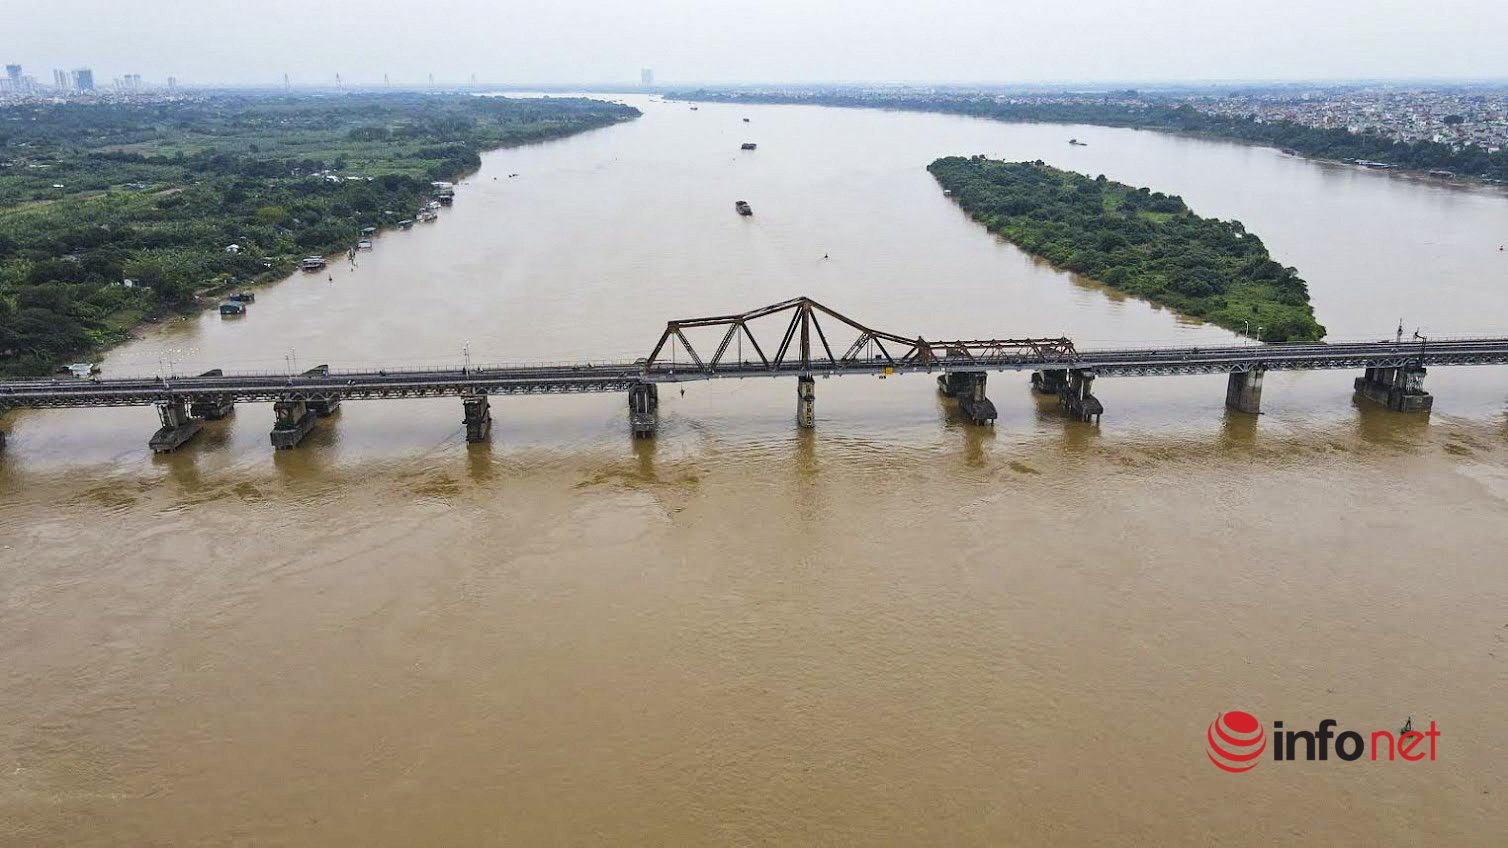 cầu Long Biên,Hà Nội,Giao thông Hà Nội,tham gia giao thông,cầu long biên xuống cấp